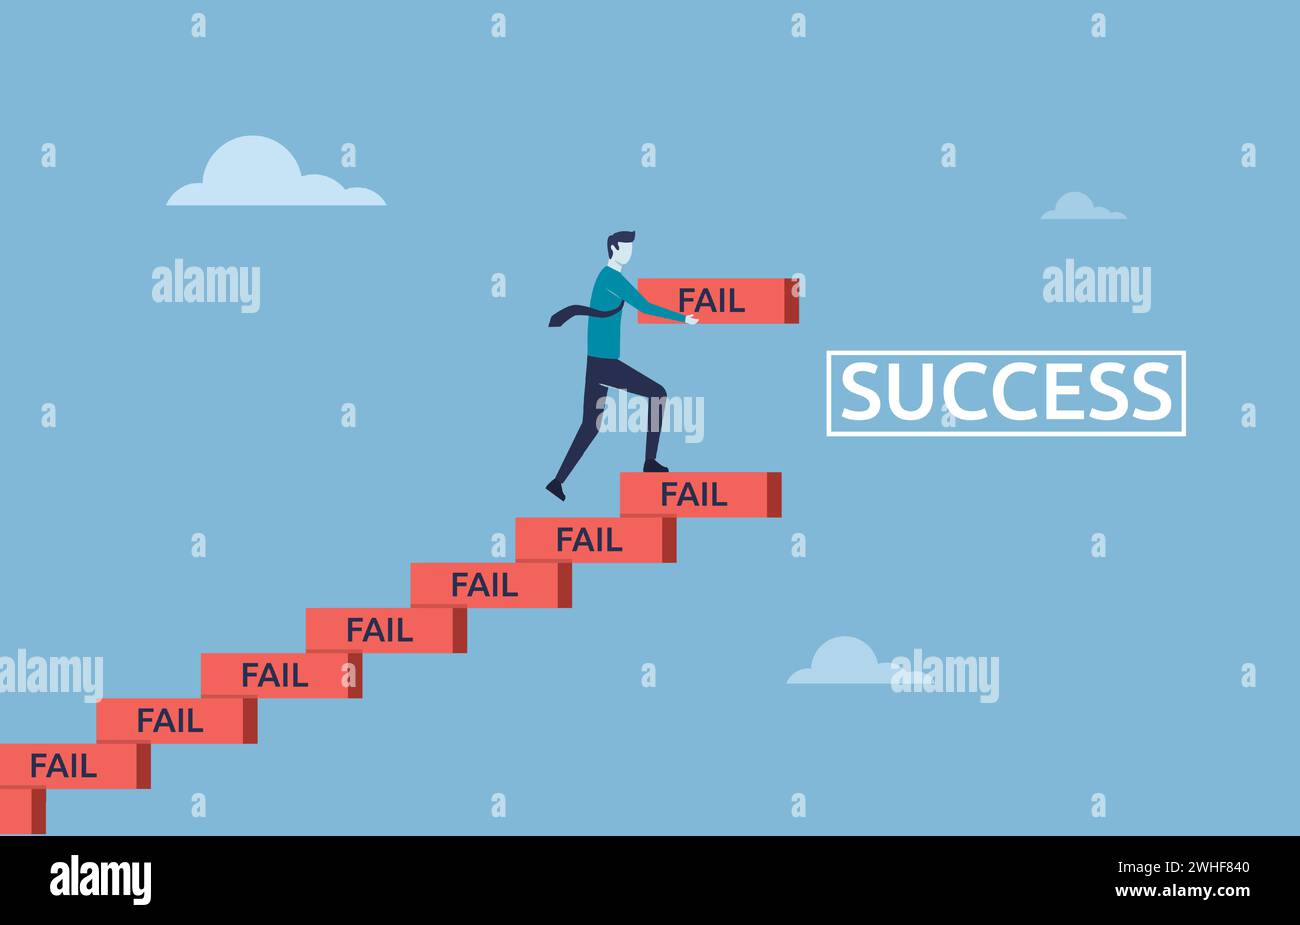 Lernen Sie, zu scheitern als Weg zur Erreichung des Zielkonzepts, verbessern Sie sich vom Versagen, Treppenaufbauten zum Erfolg, streben Sie nach, dass ein Geschäftsmann mit seinem Versagen Treppenaufgänge zum Erfolg baut Stock Vektor